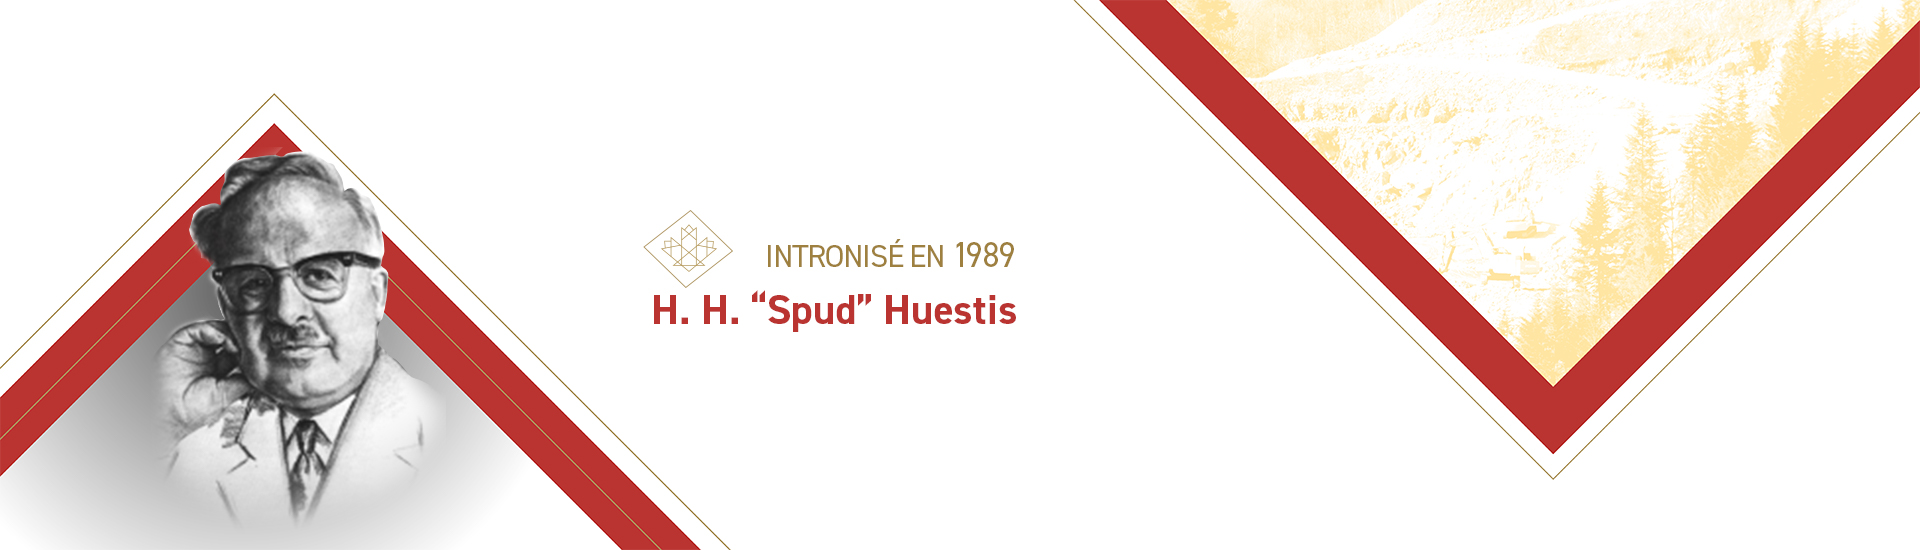 H. H. "patate" Huestis (1907 – 1979)